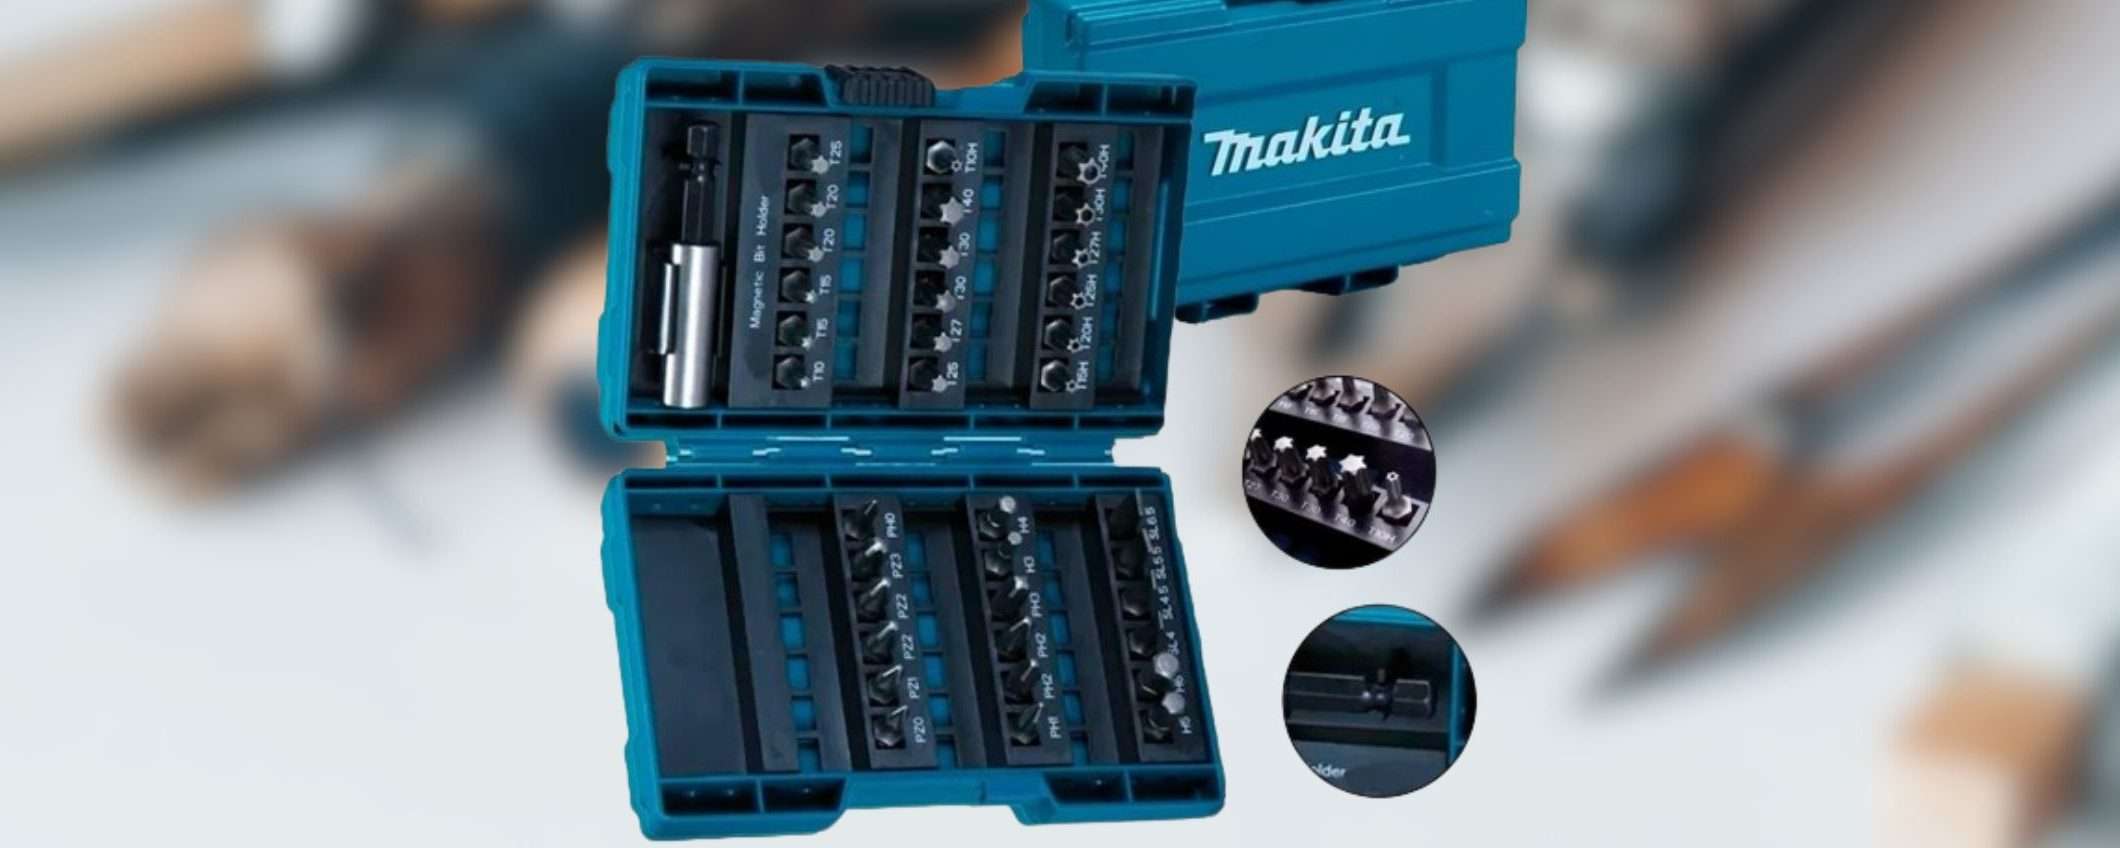 Makita, OCCASIONE su Amazon: kit 37 in 1 alta qualità a prezzo SHOCK (18€)